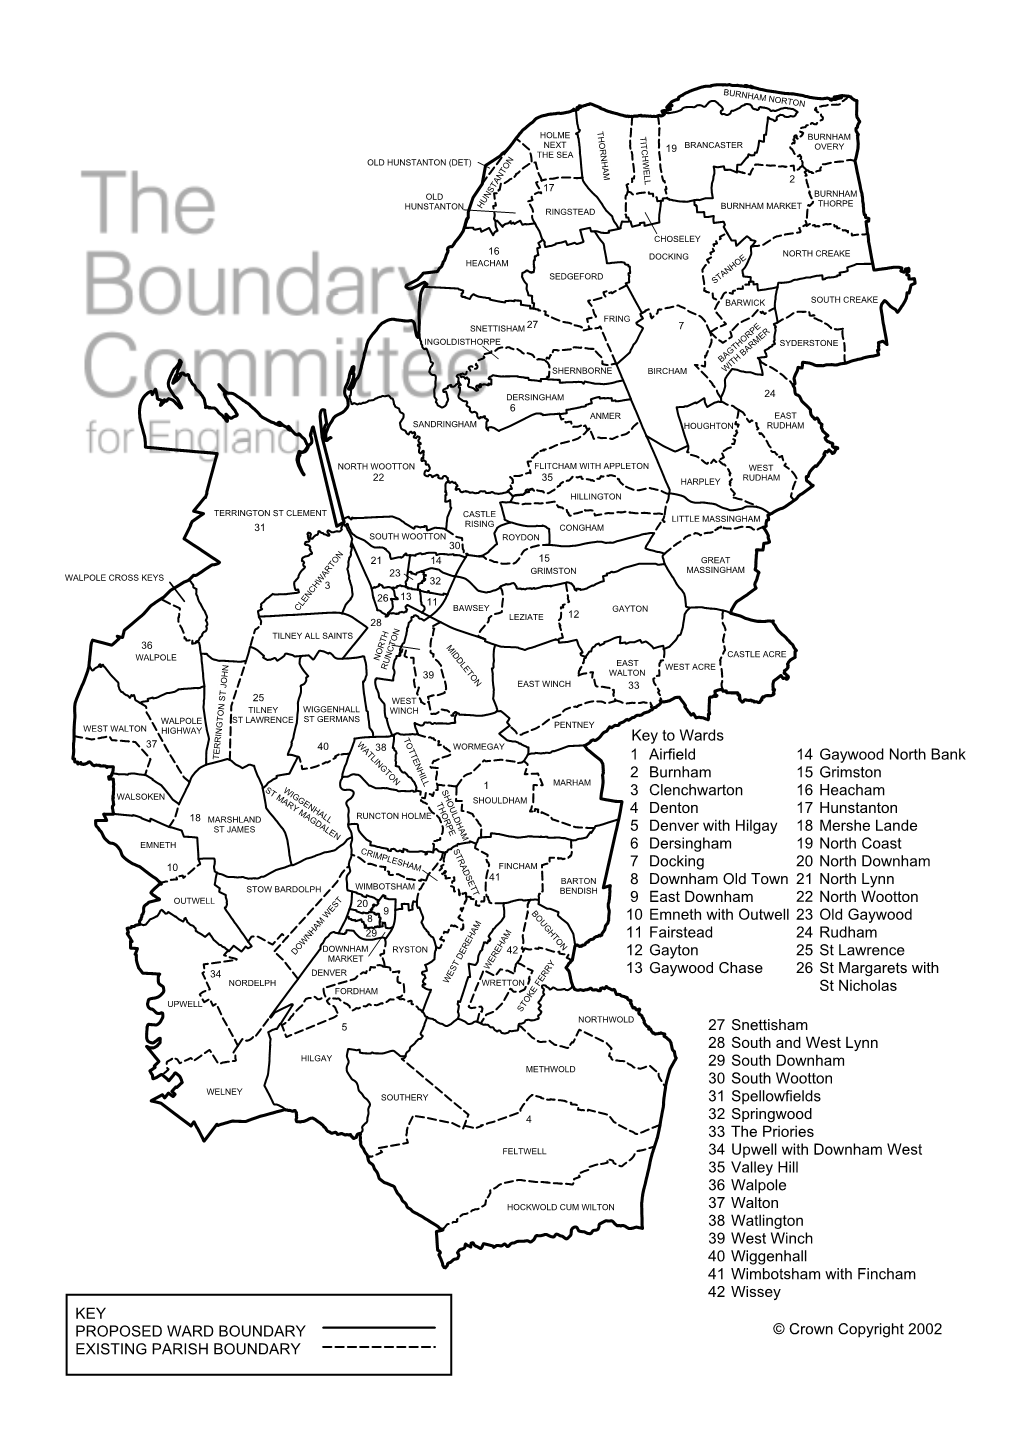 Key Proposed Ward Boundary Existing Parish